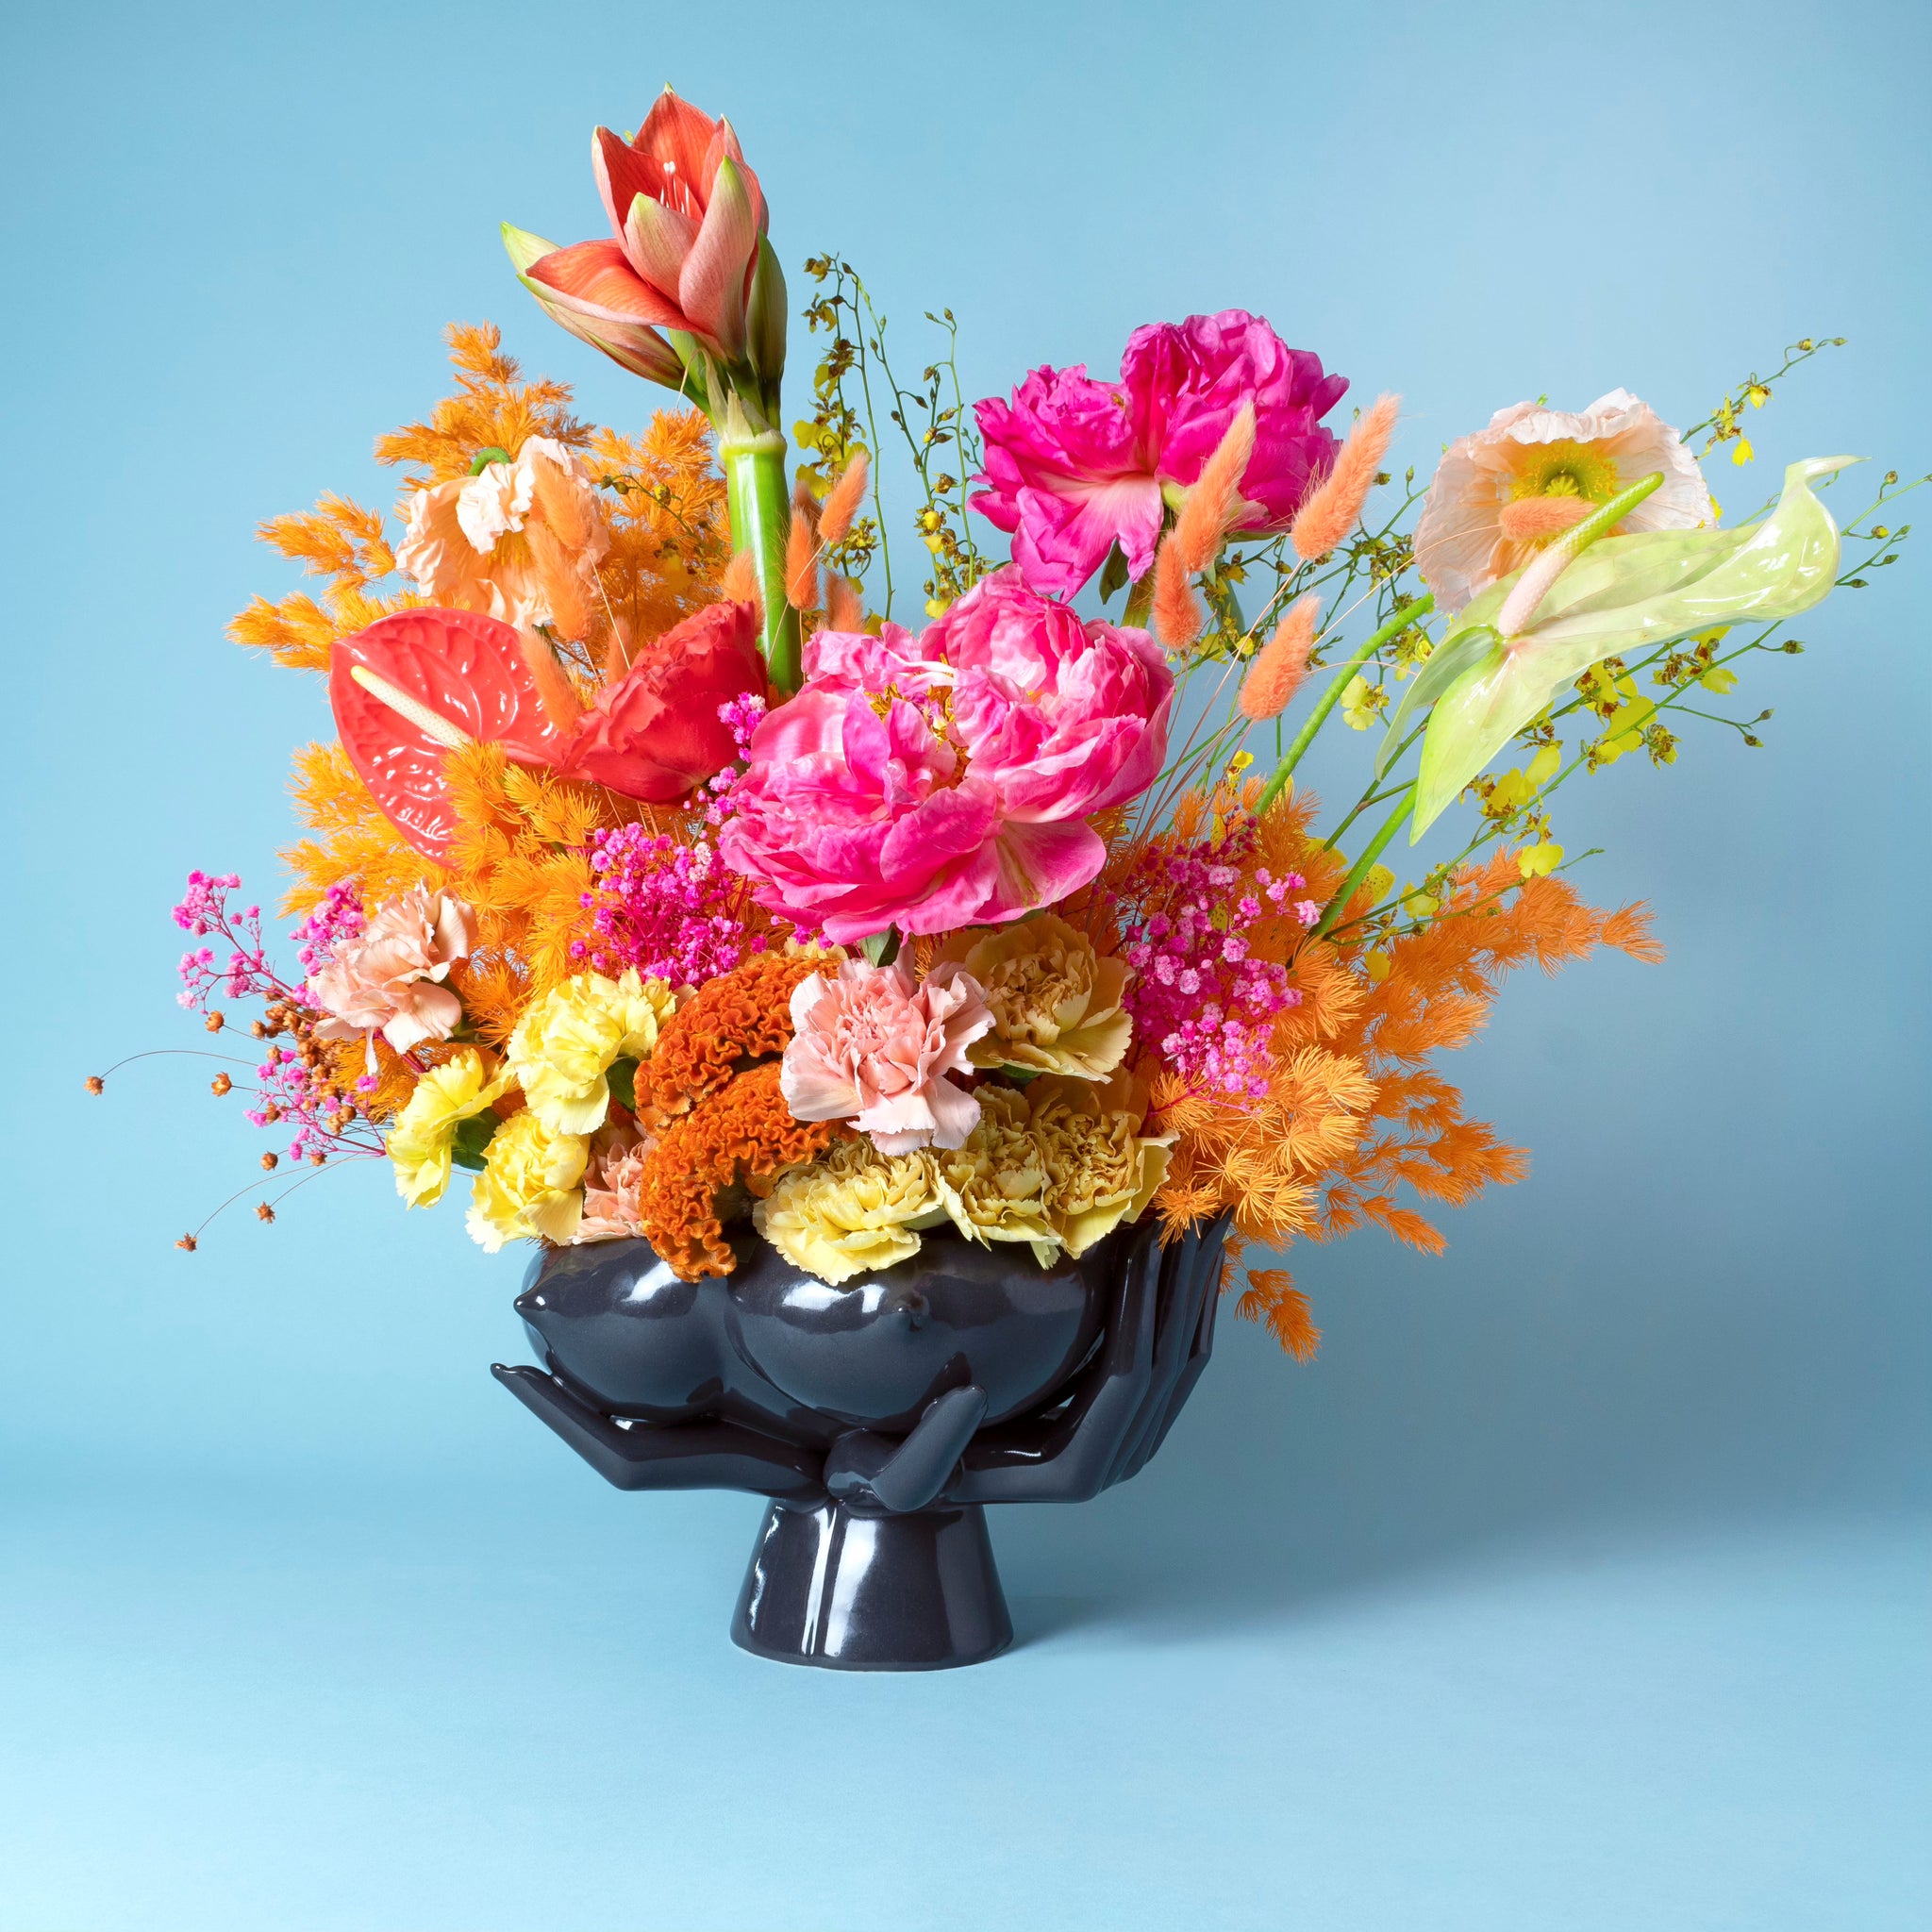 Jillian Evelyn - "Bountiful" Vase